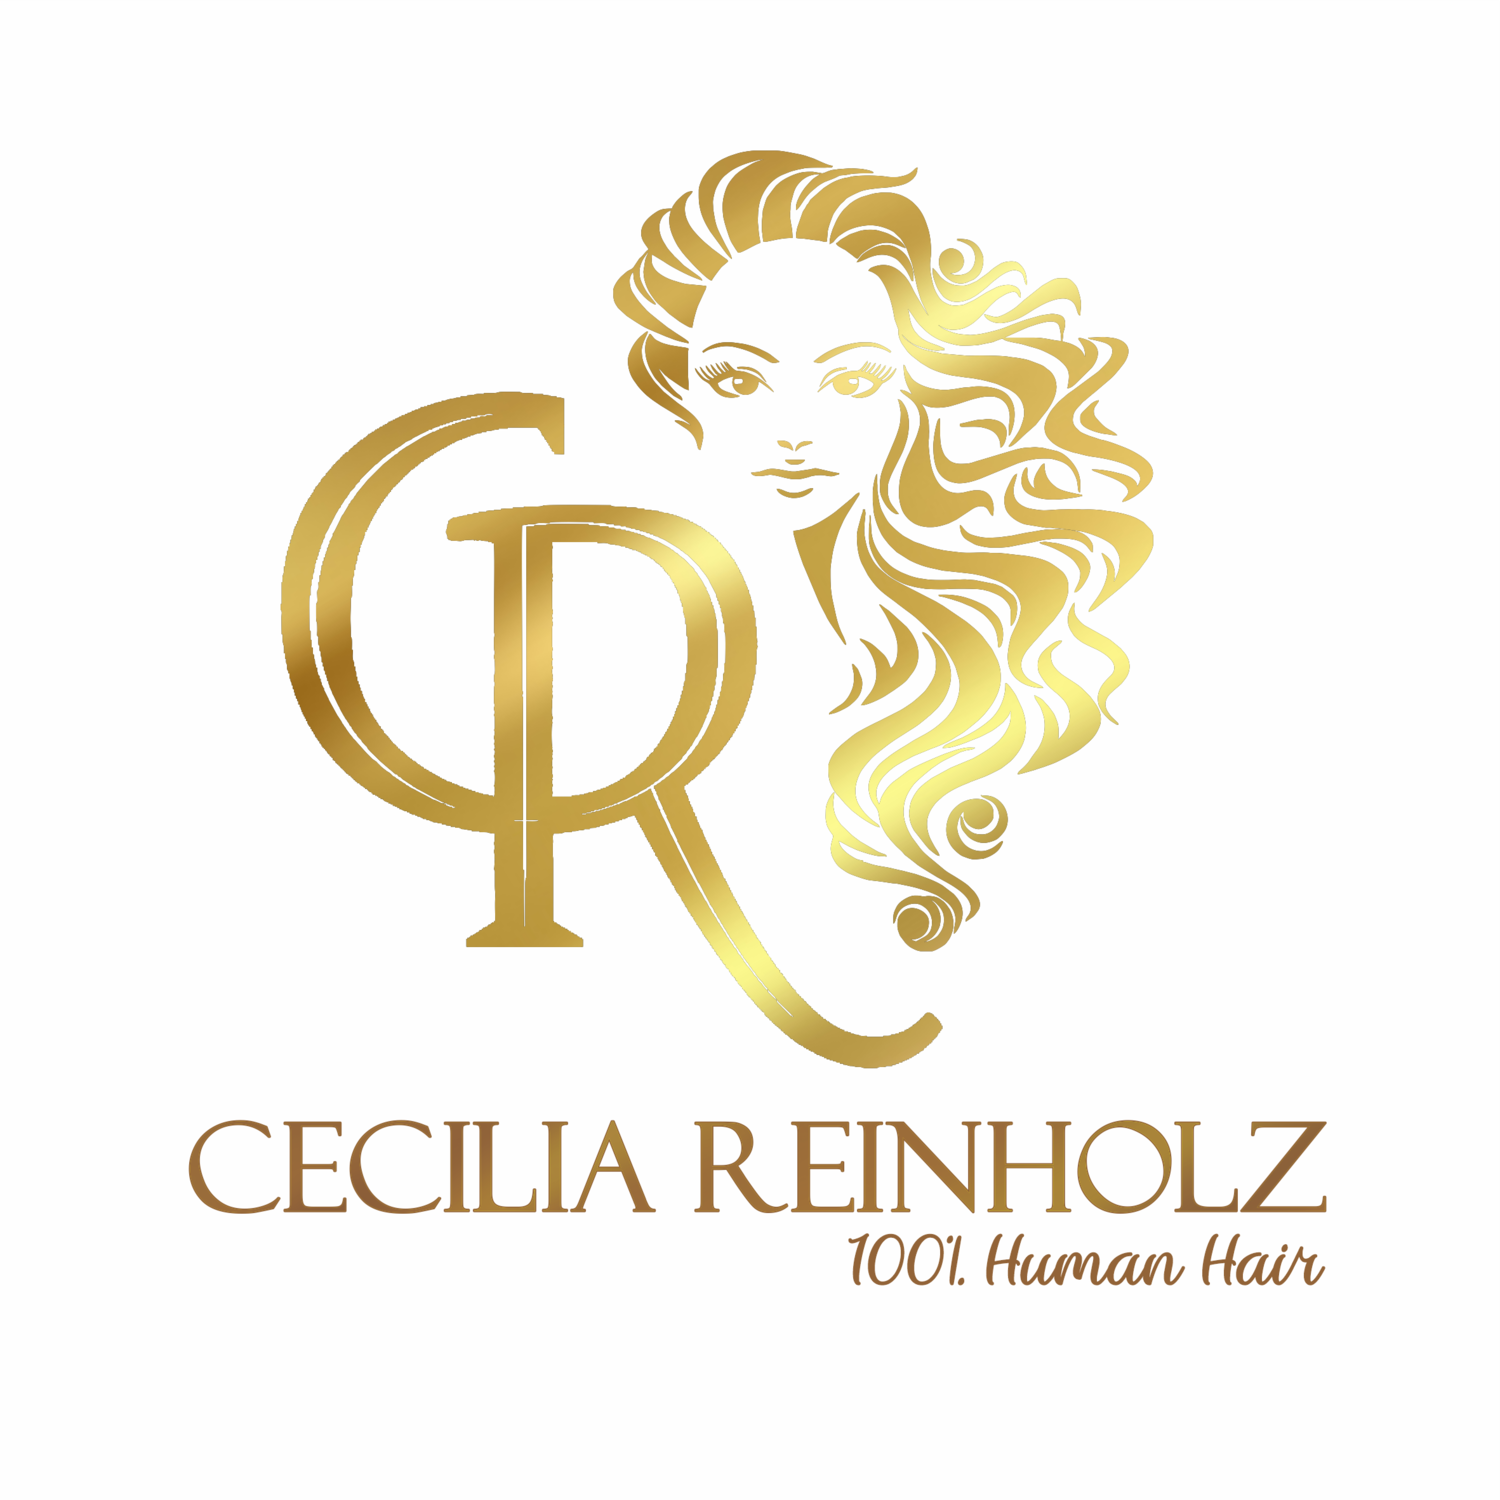 Cecilia Reinholz 100% Human Hair